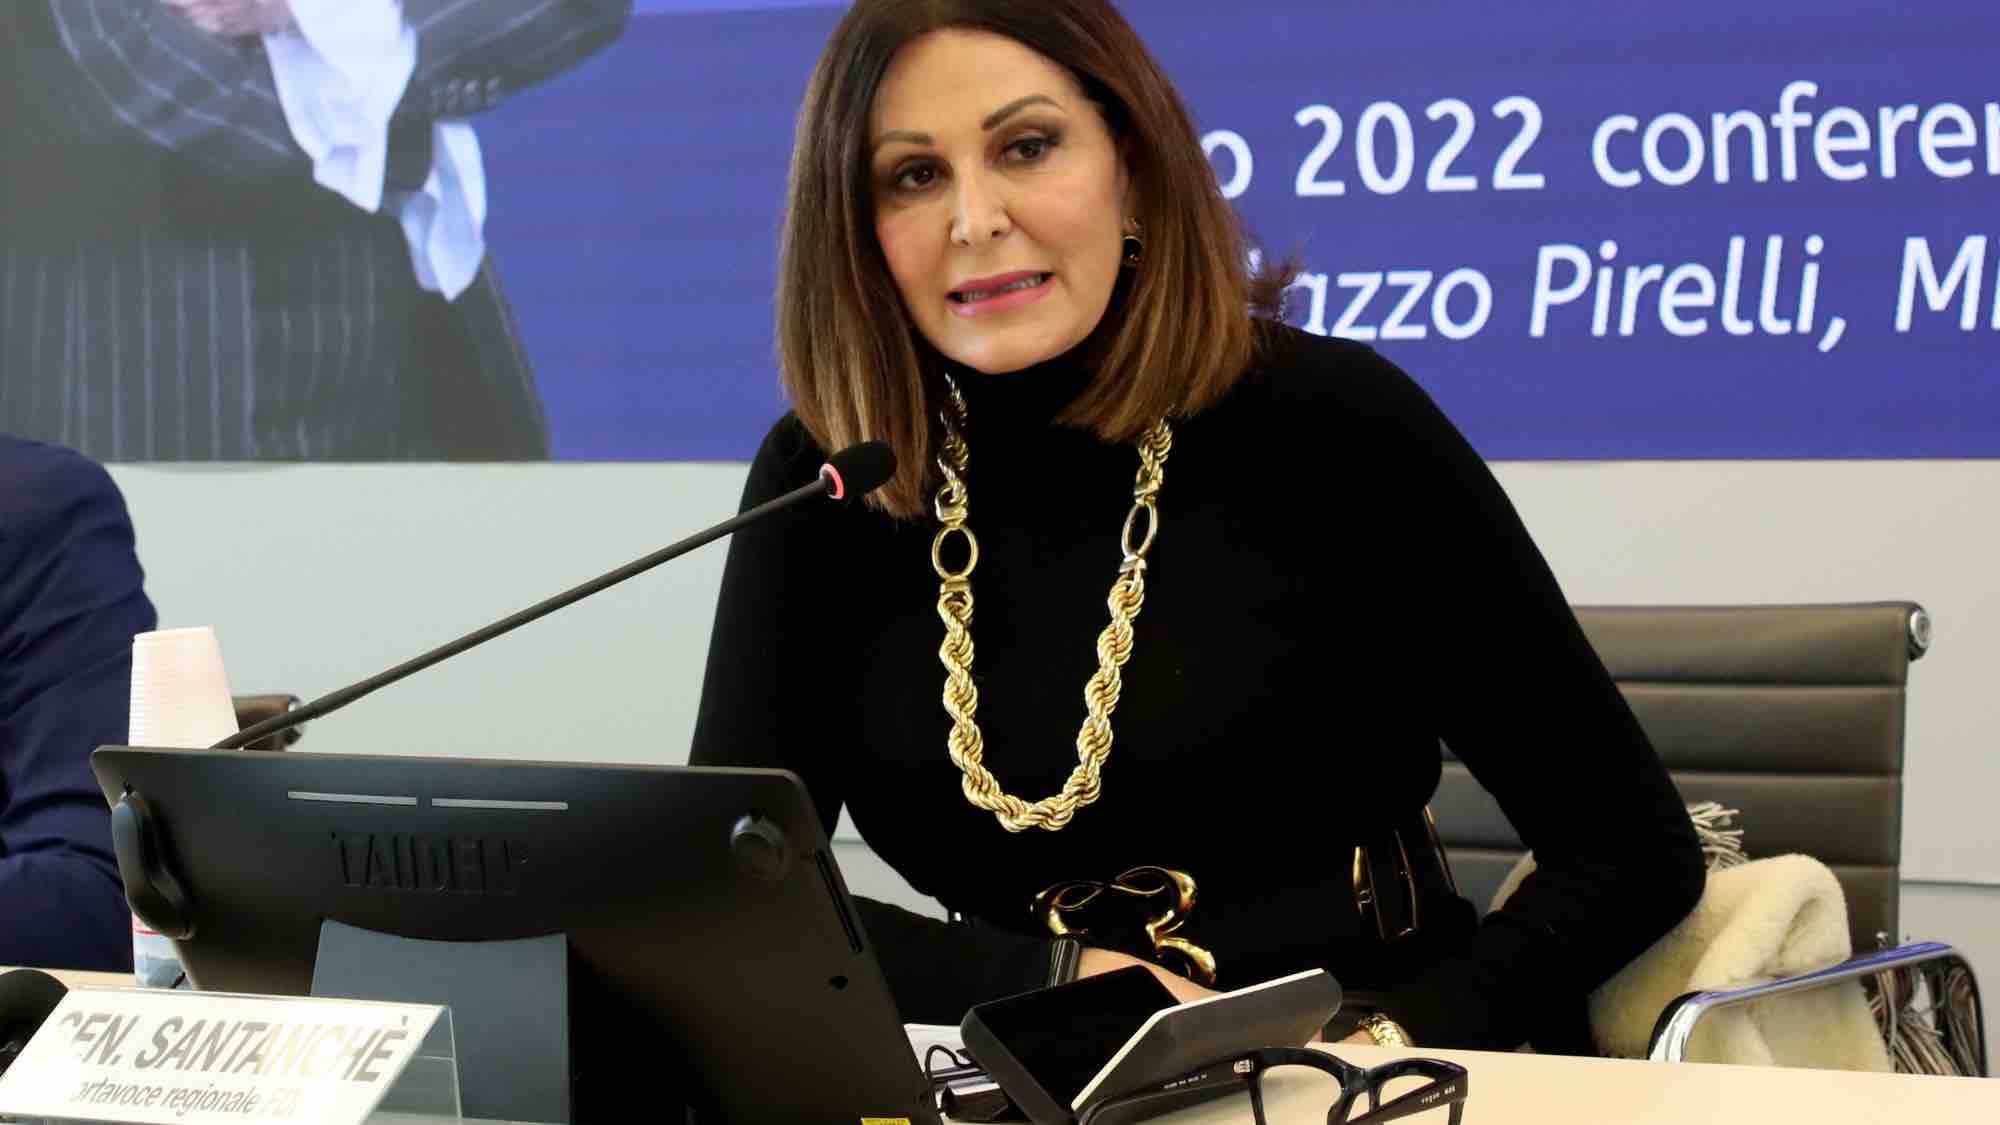 La ministra del Turismo, Daniela Santanchè